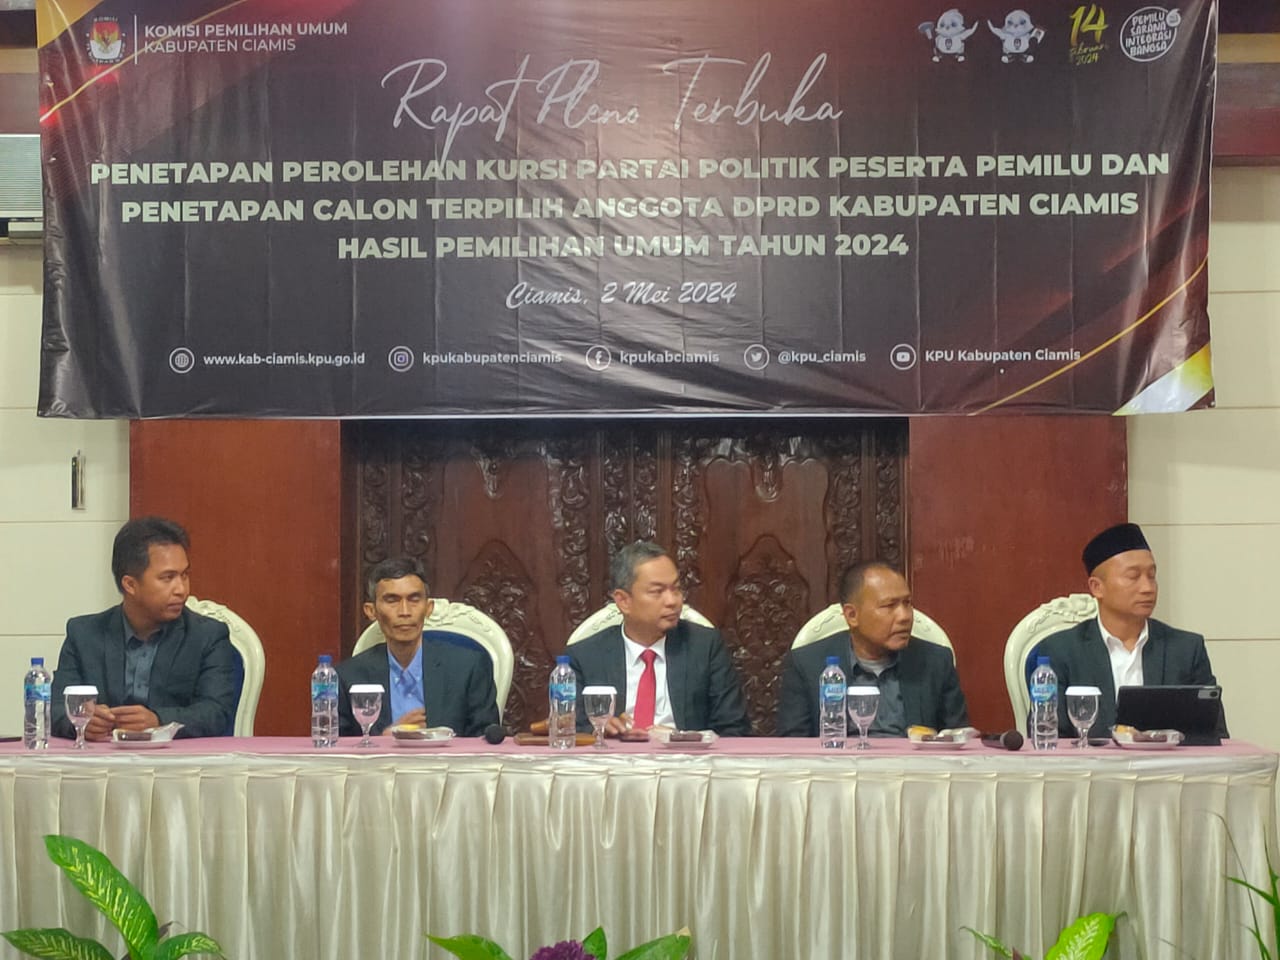 KPU Kabupaten Ciamis Umumkan 50 Anggota DPRD Terpilih Hasil Pemilu 2024, ini Rinciannya